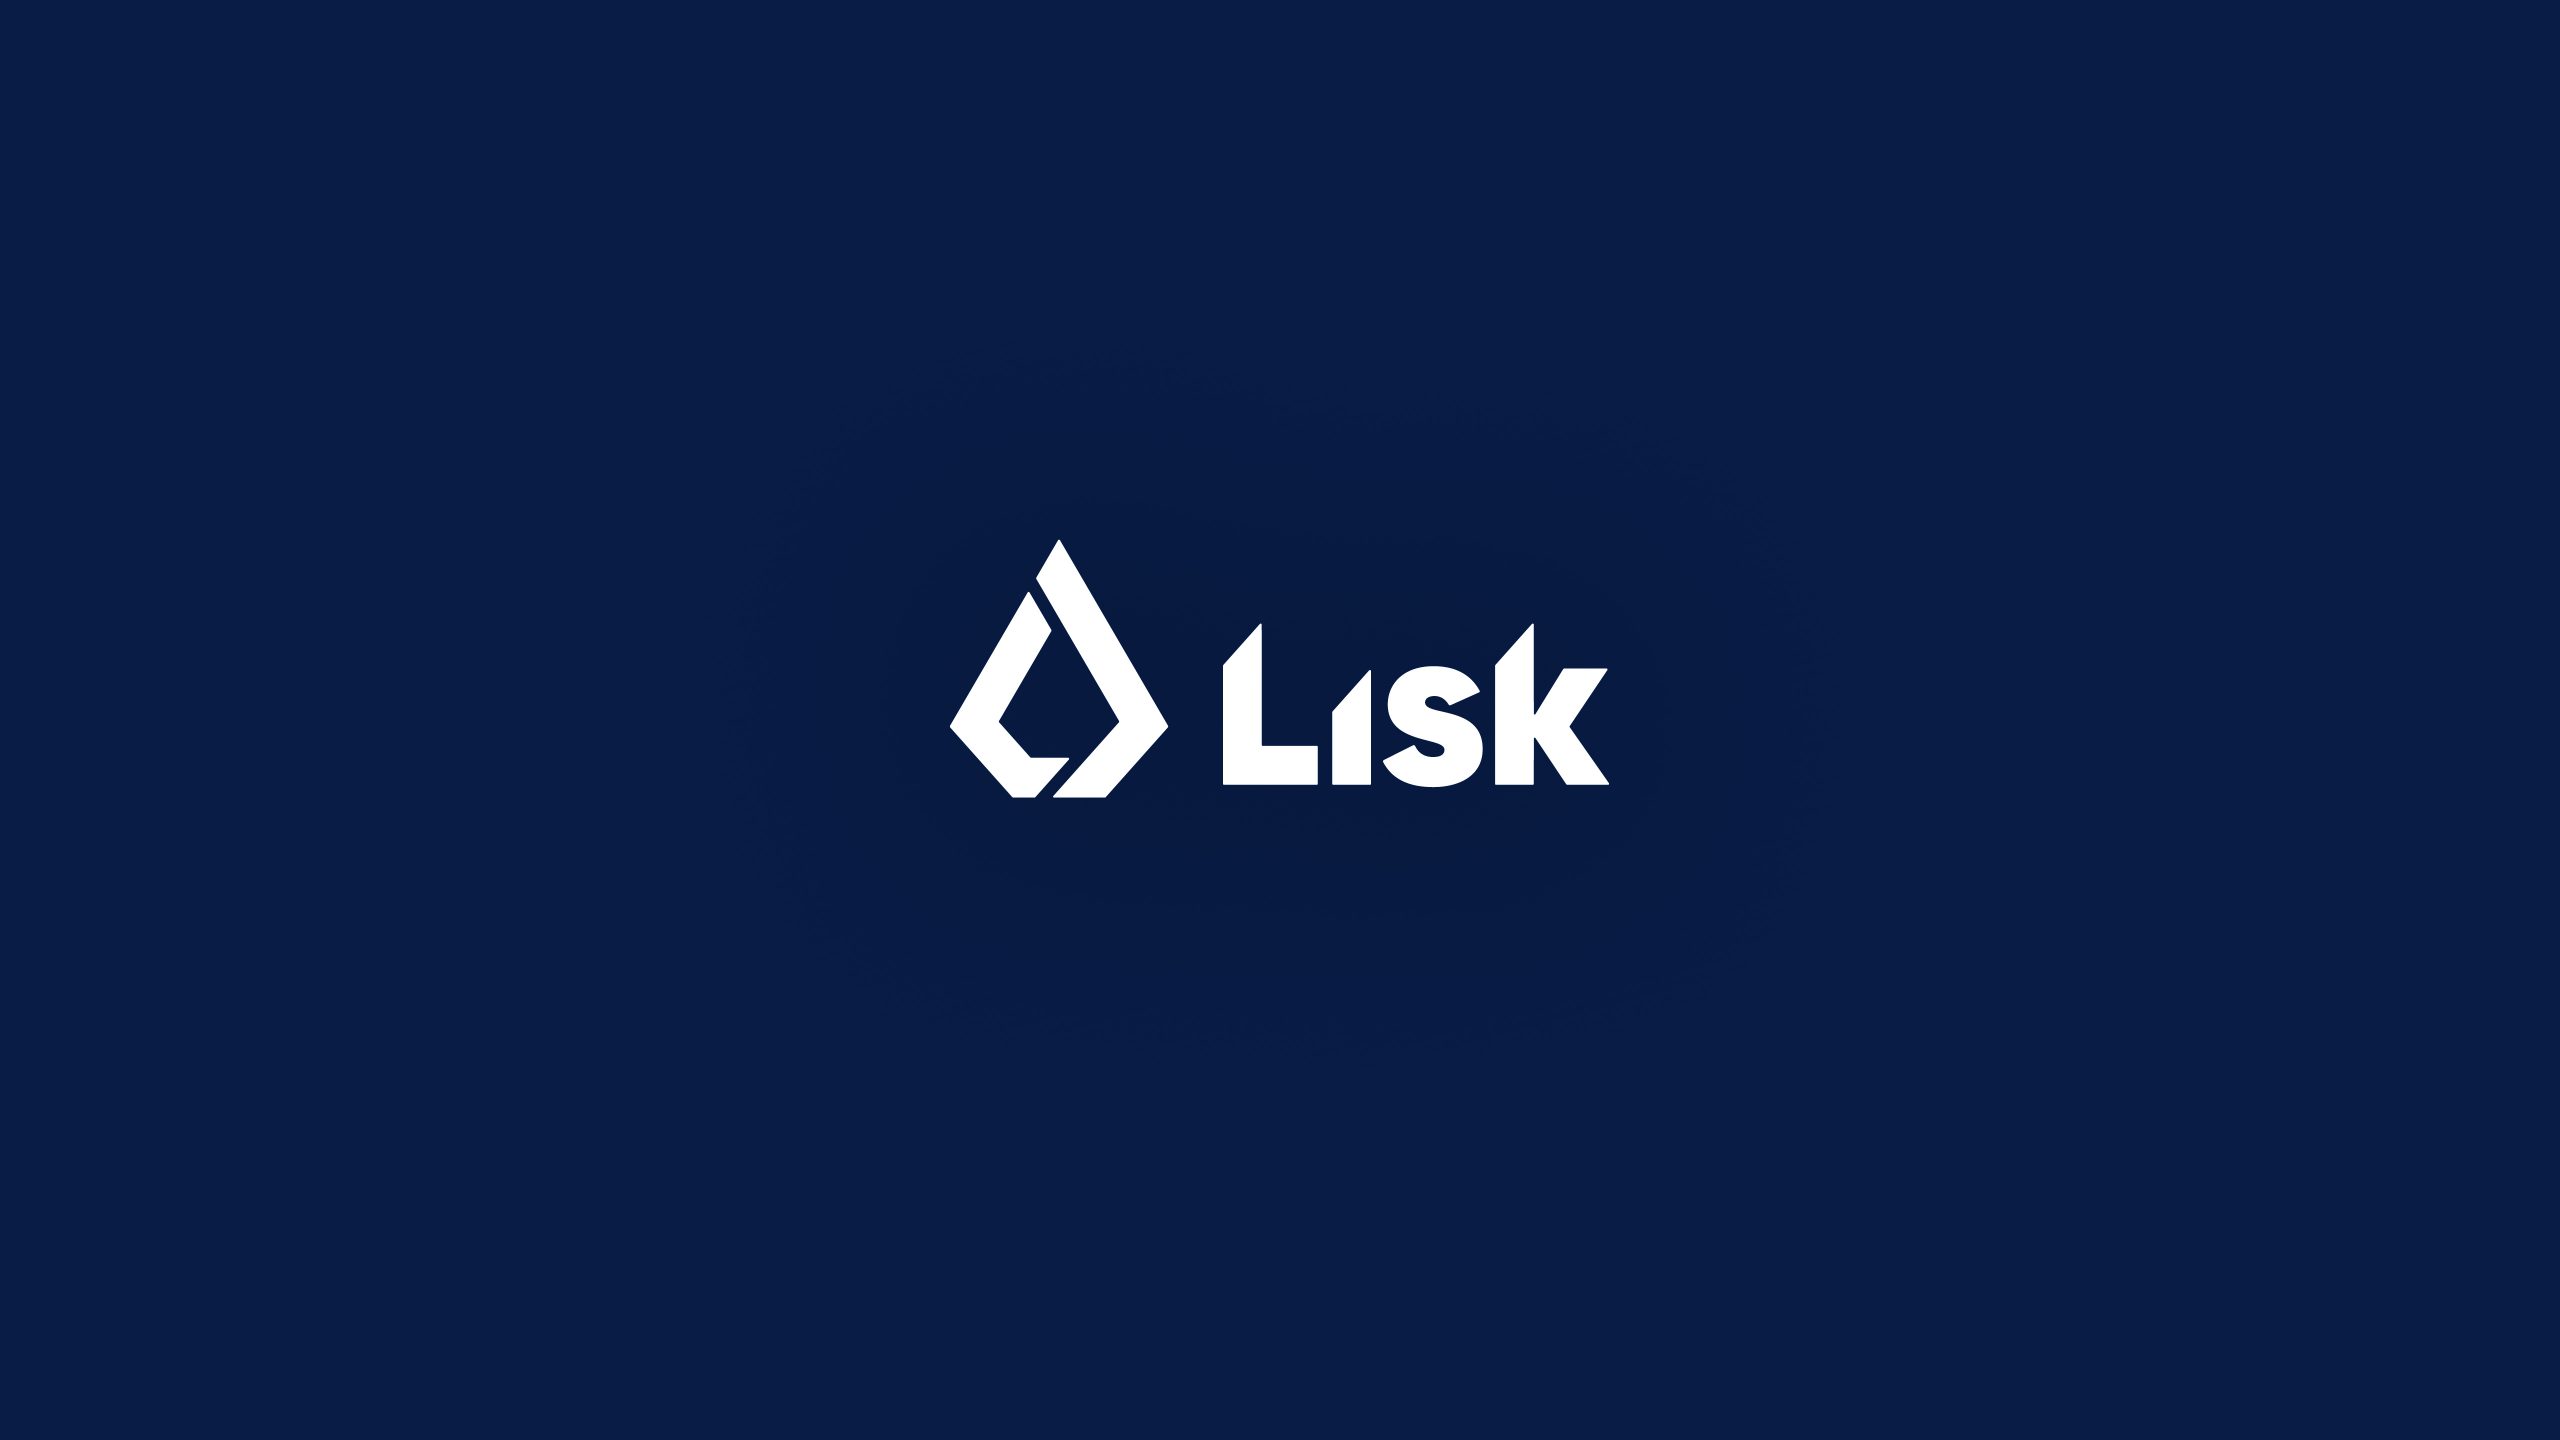 Что такое Lisk? Sidechain и DAPP платформа, основанная на Javascript